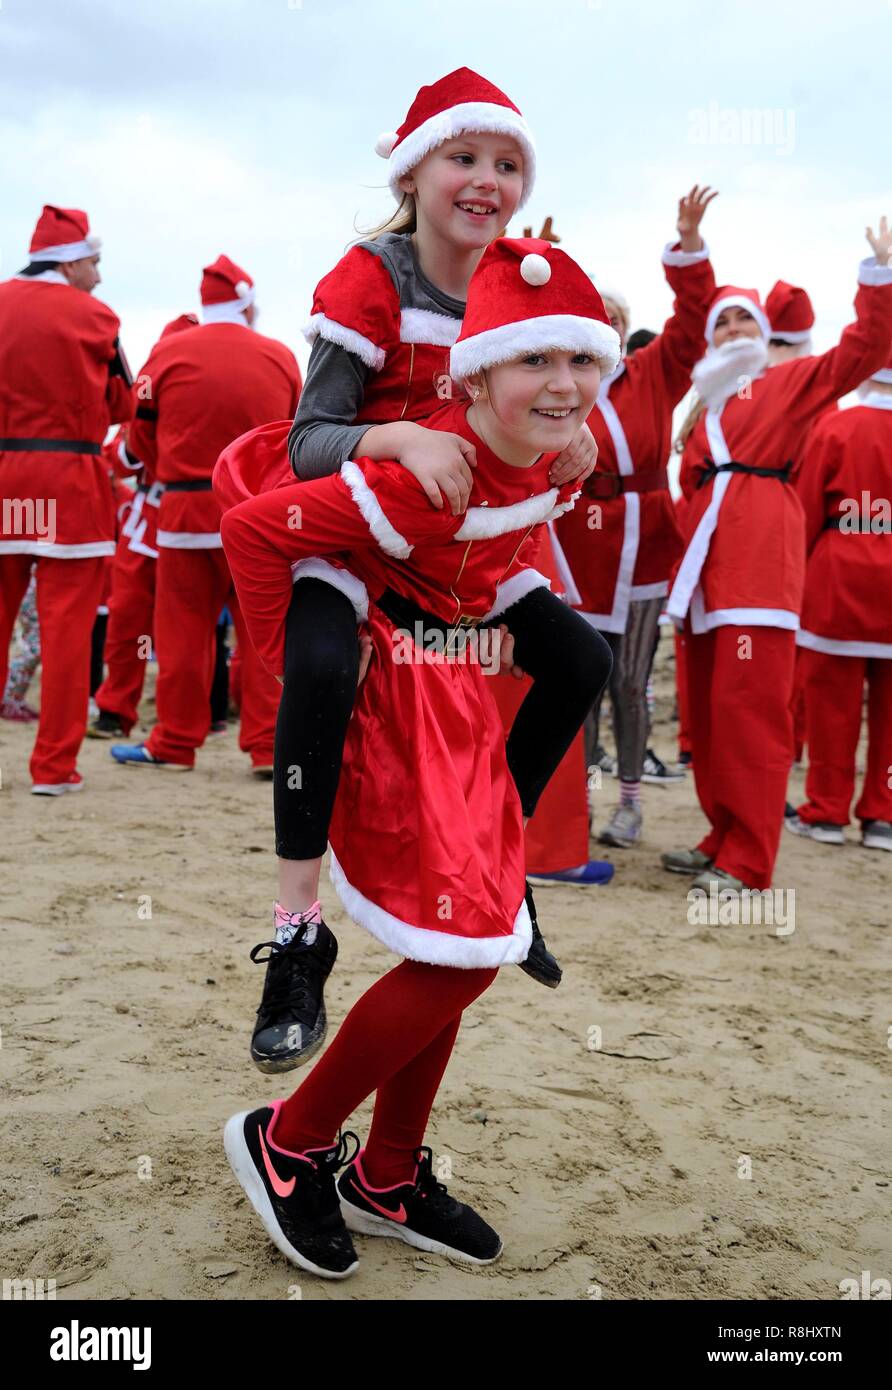 Chase le pudding est une course de 5 km le long de plage de Weymouth habillée en père et la poursuite d'un pudding de Noël et la collecte de fonds pour l'organisme de bienfaisance local la volonté populaire Mackaness Trust. Finnbarr Crédit : Webster/Alamy Live News Banque D'Images